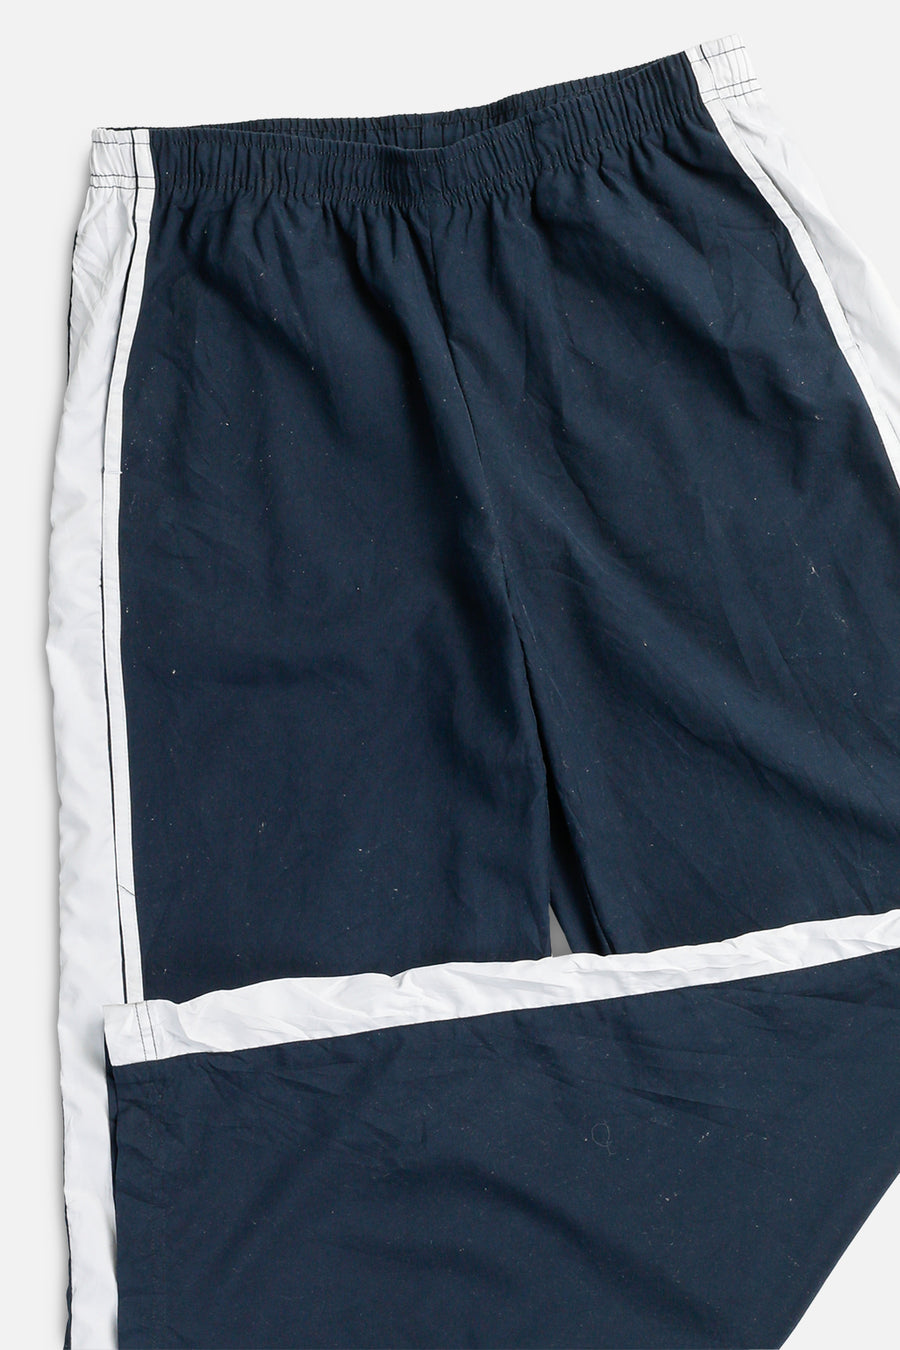 Vintage Nike Windbreaker Pants - Women's L